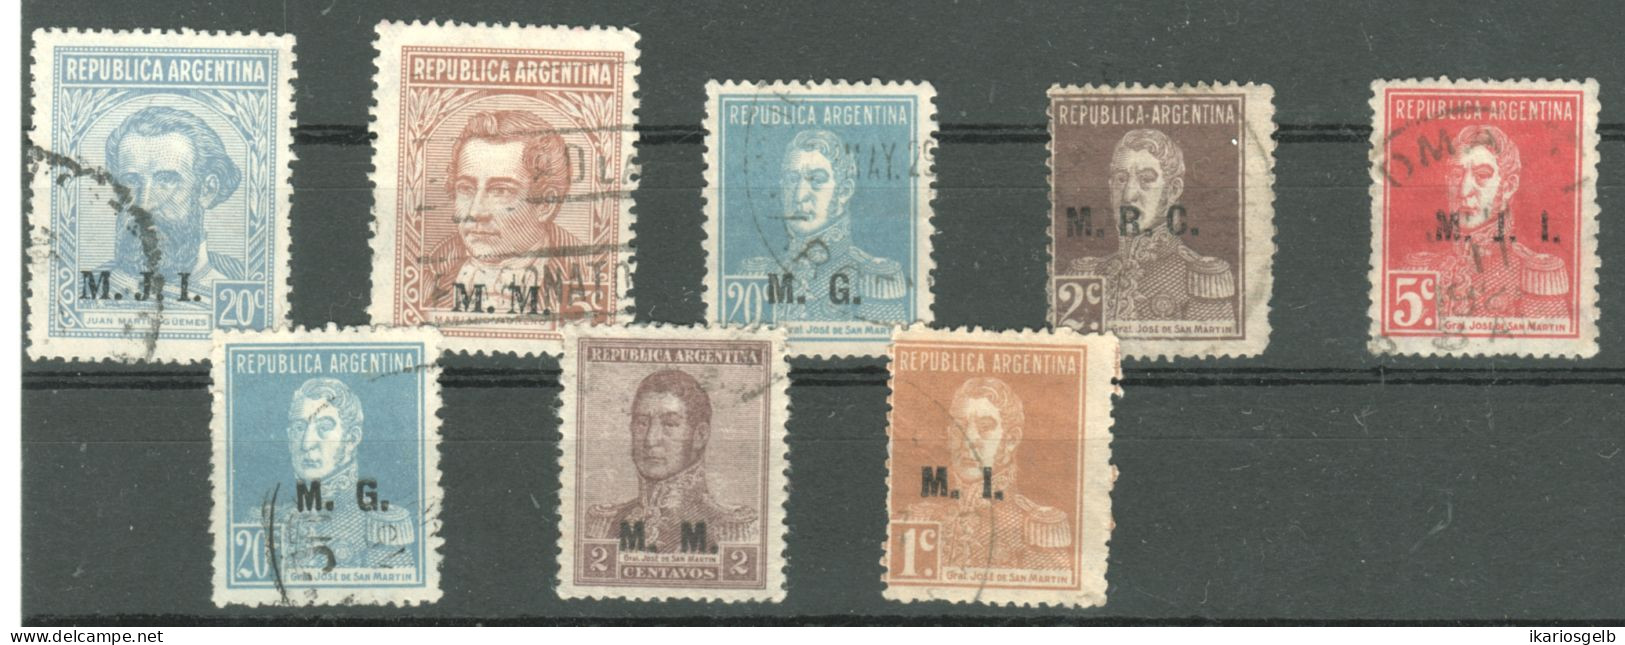 ARGENTINIEN Argentina ~1924 Lot 8 Marken + Ministerial-Aufdrucke M.I.I. - M.M. - M.G. - M.I. = Ministry Overprints - Dienstmarken